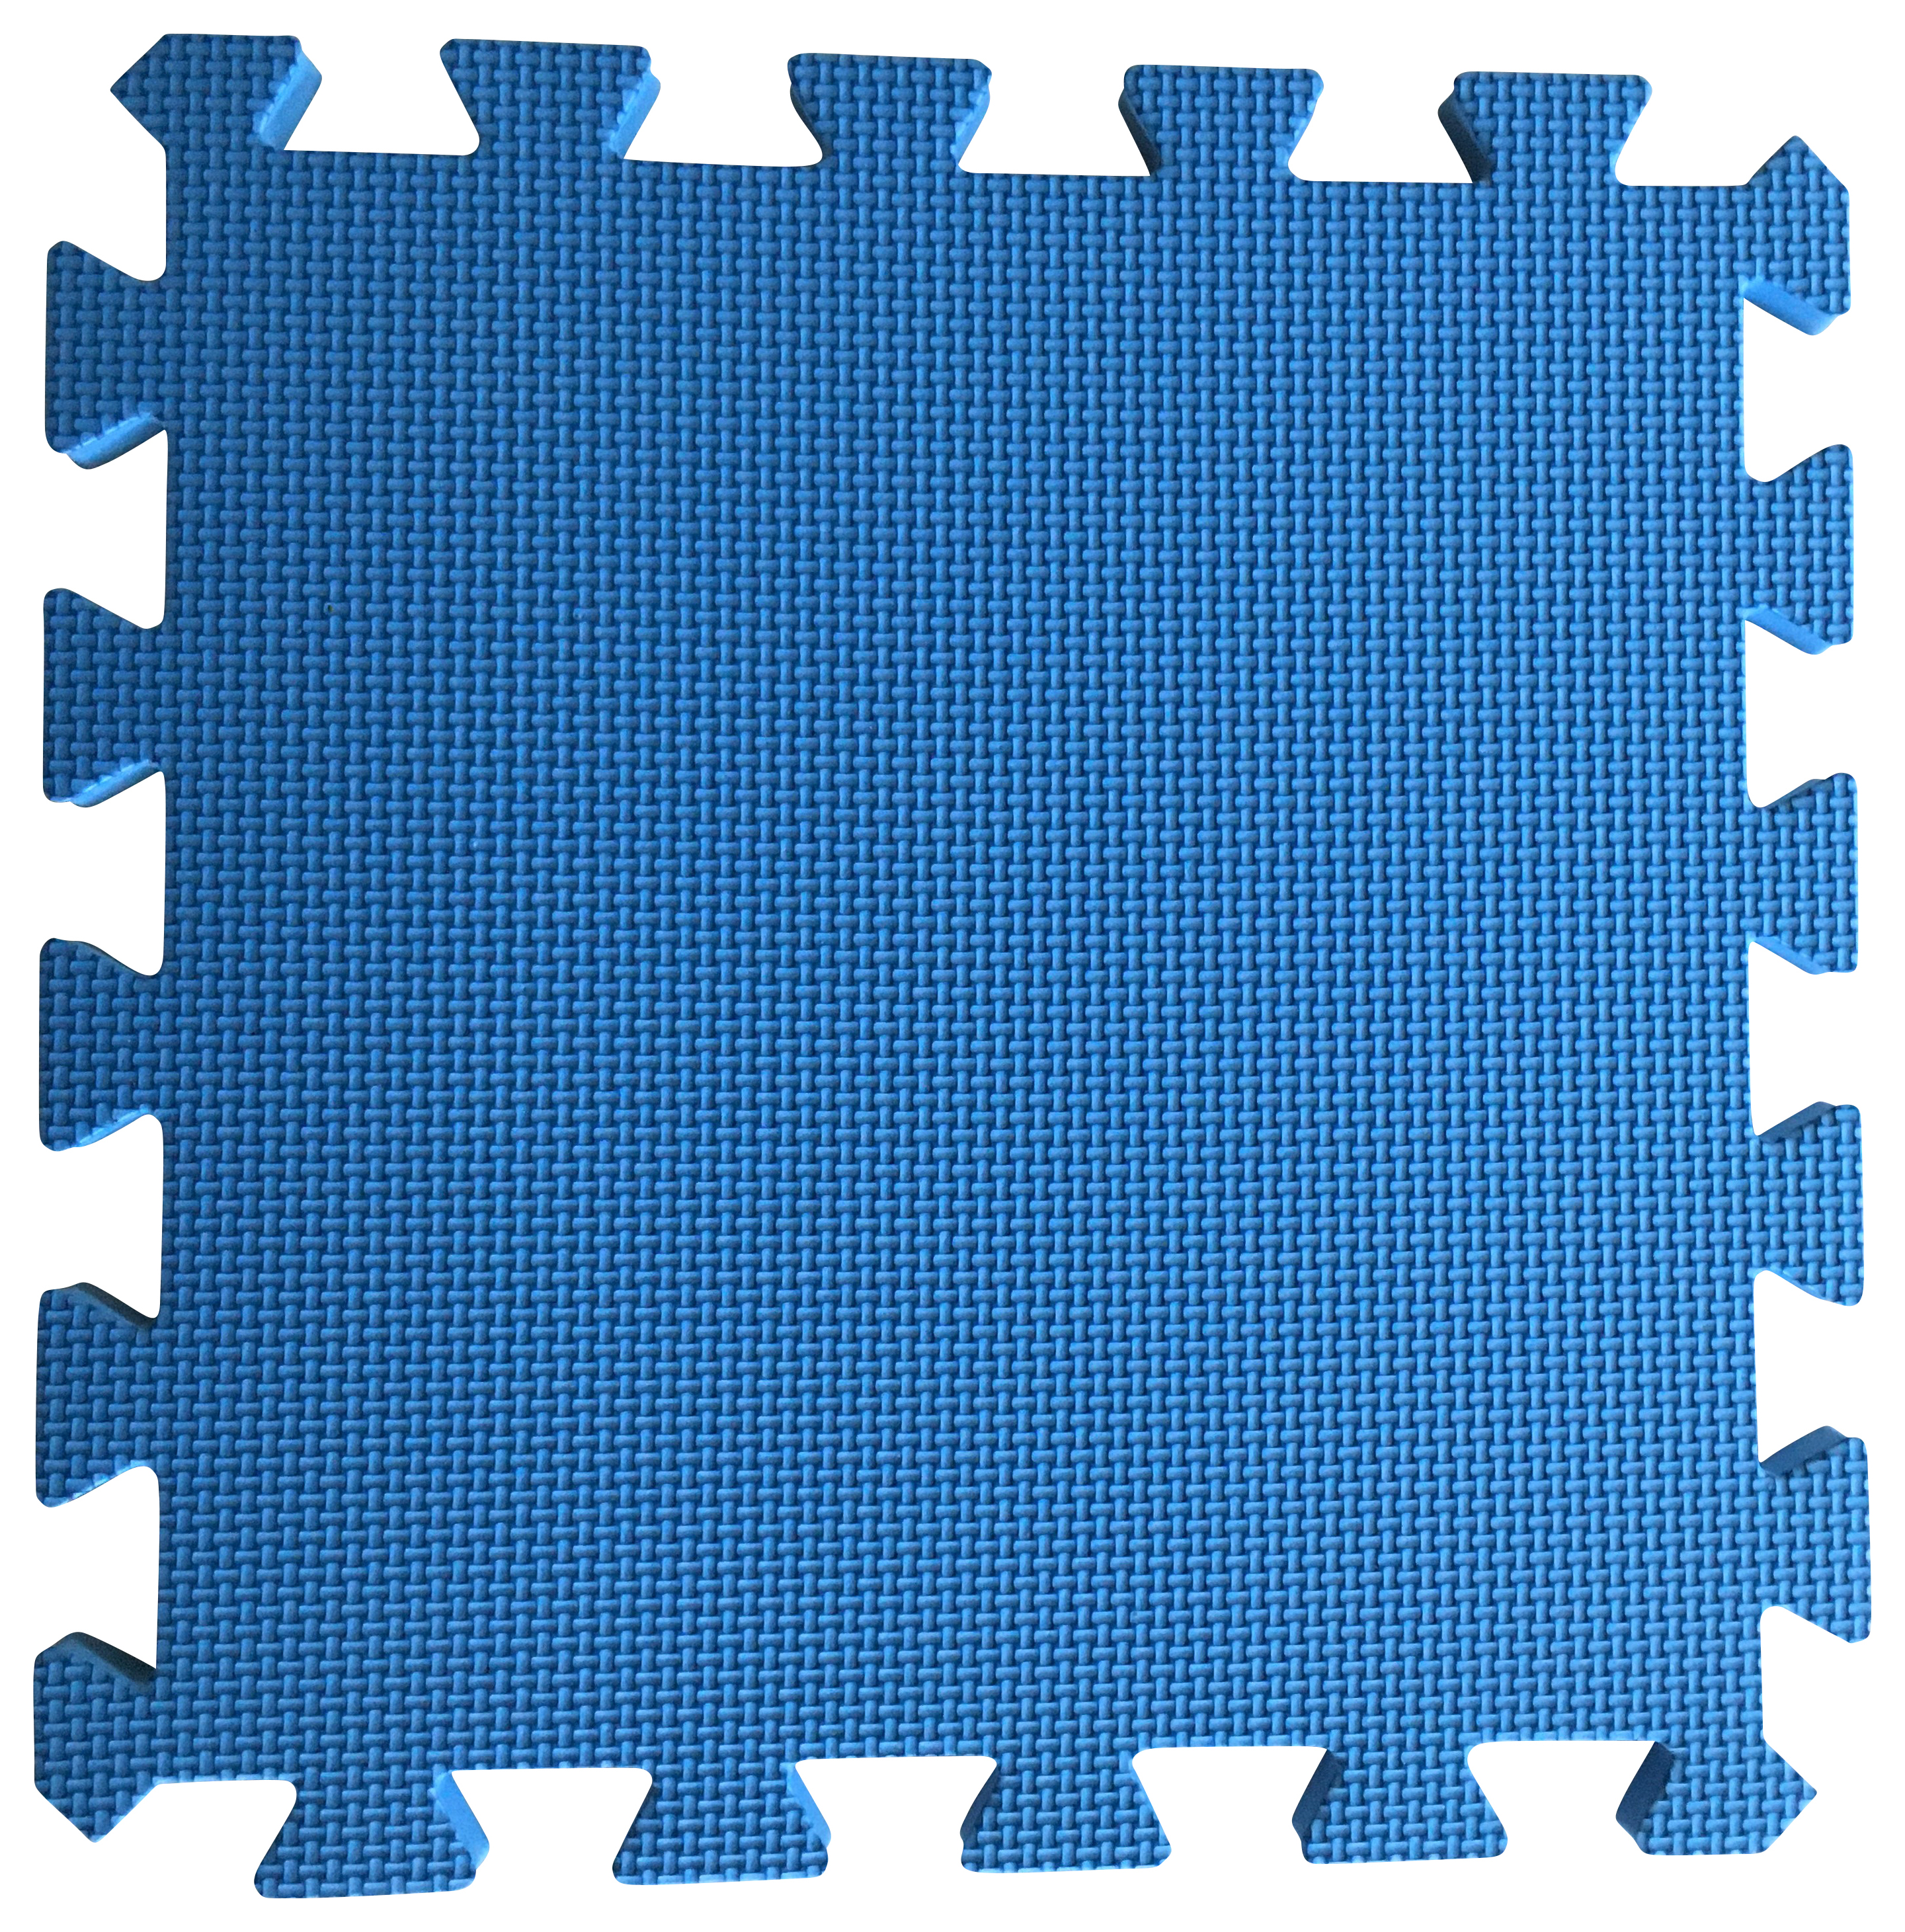 Warm Floor Blue Interlocking Floor Tiles for Garden Buildings - 9 x 7ft